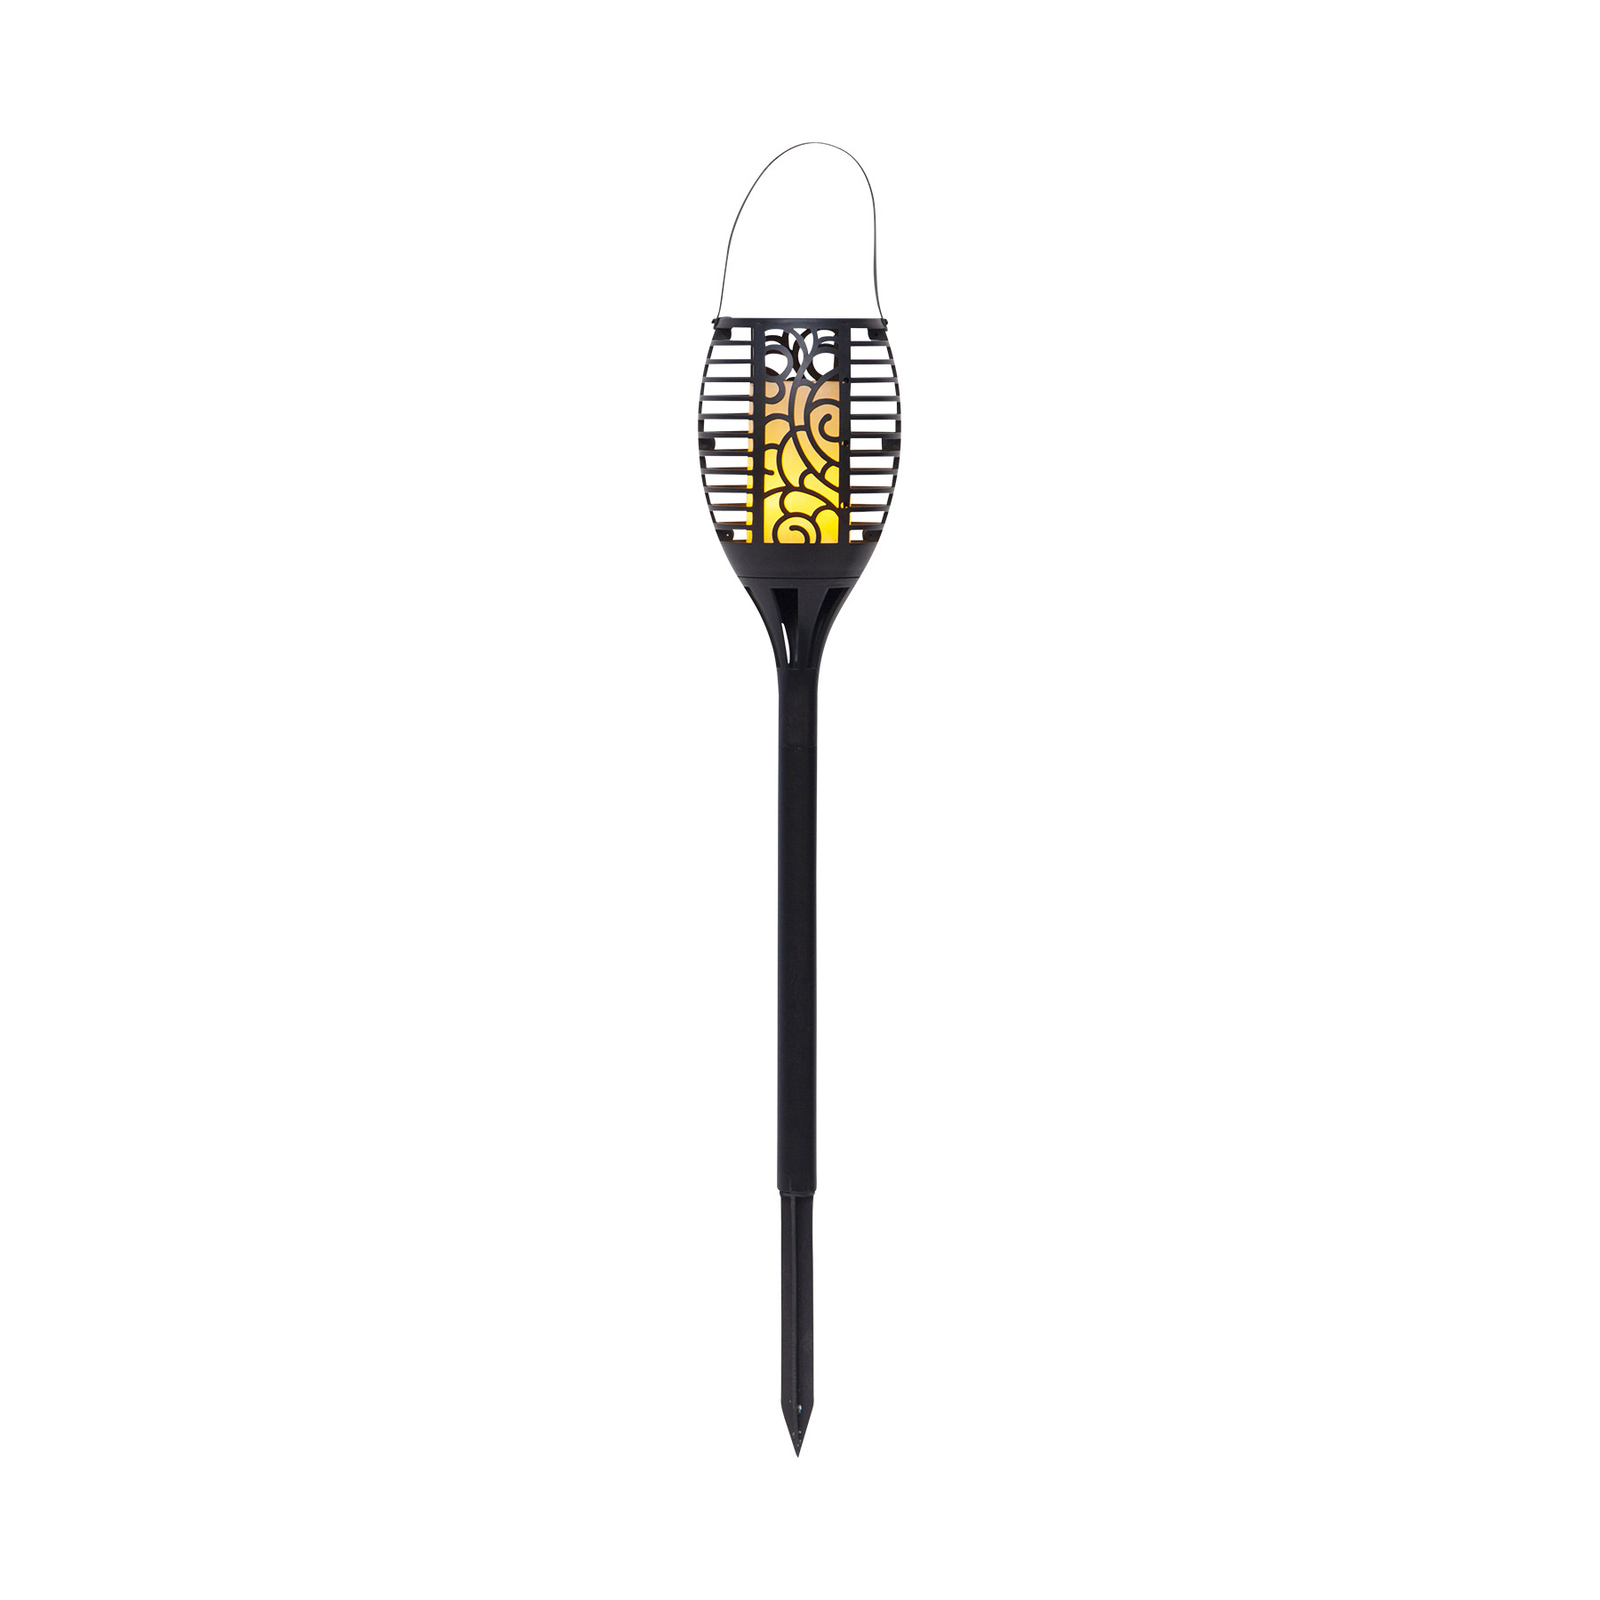 Lampă solară Flame LED, trei opțiuni de utilizare, 42 cm